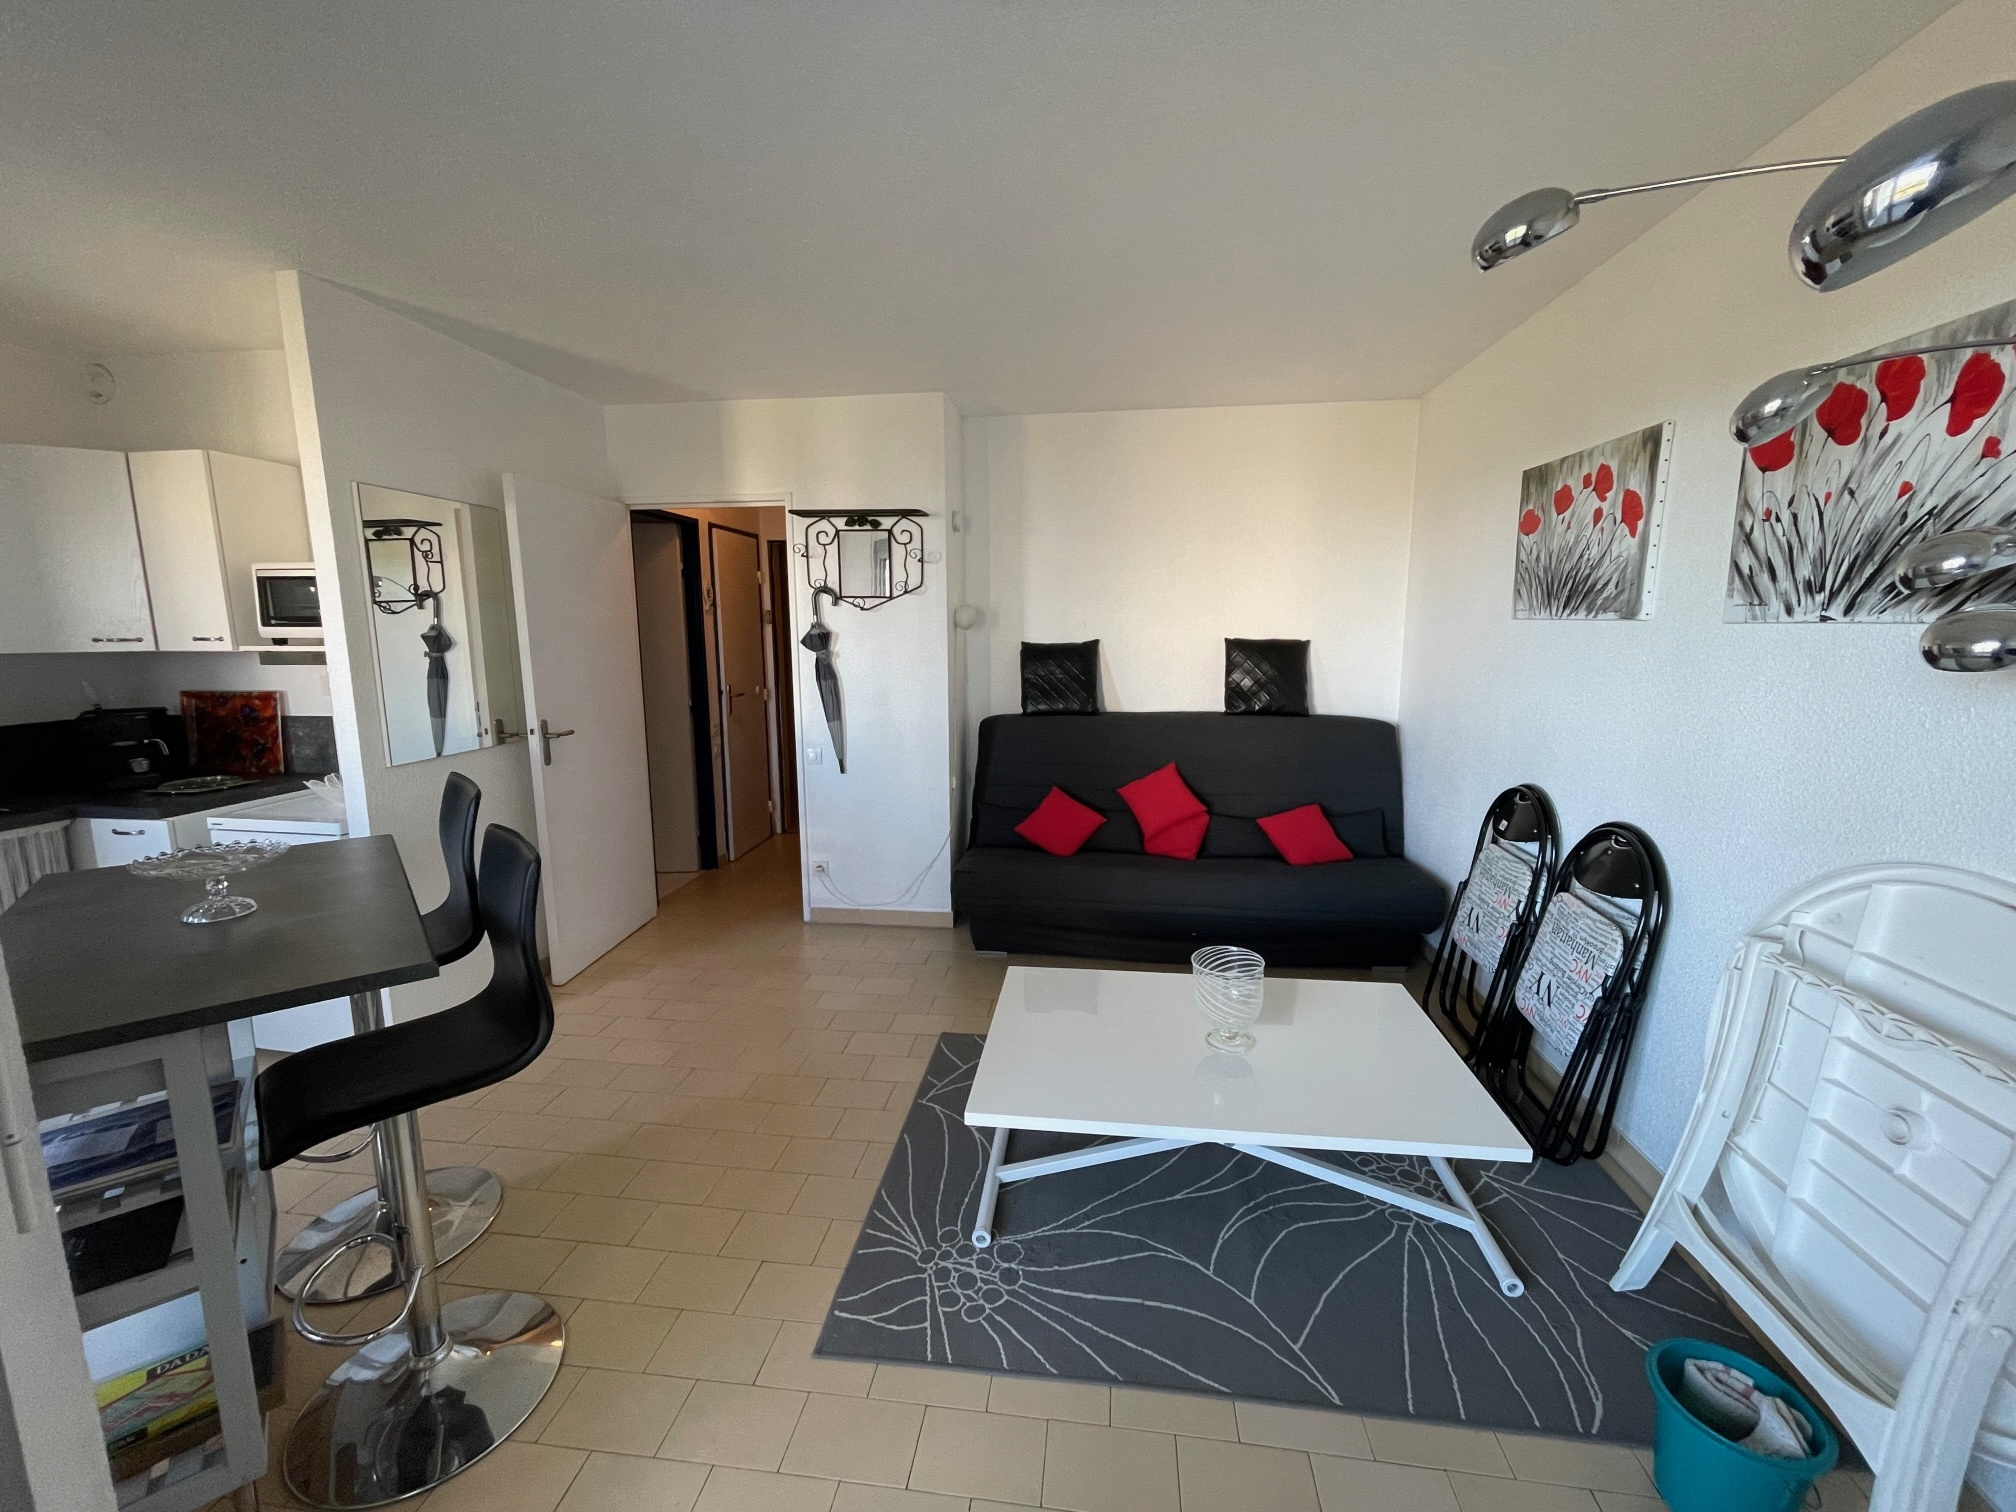 À vendre appartement de 30m2 à st cyprien plage (66750) - Photo 6'